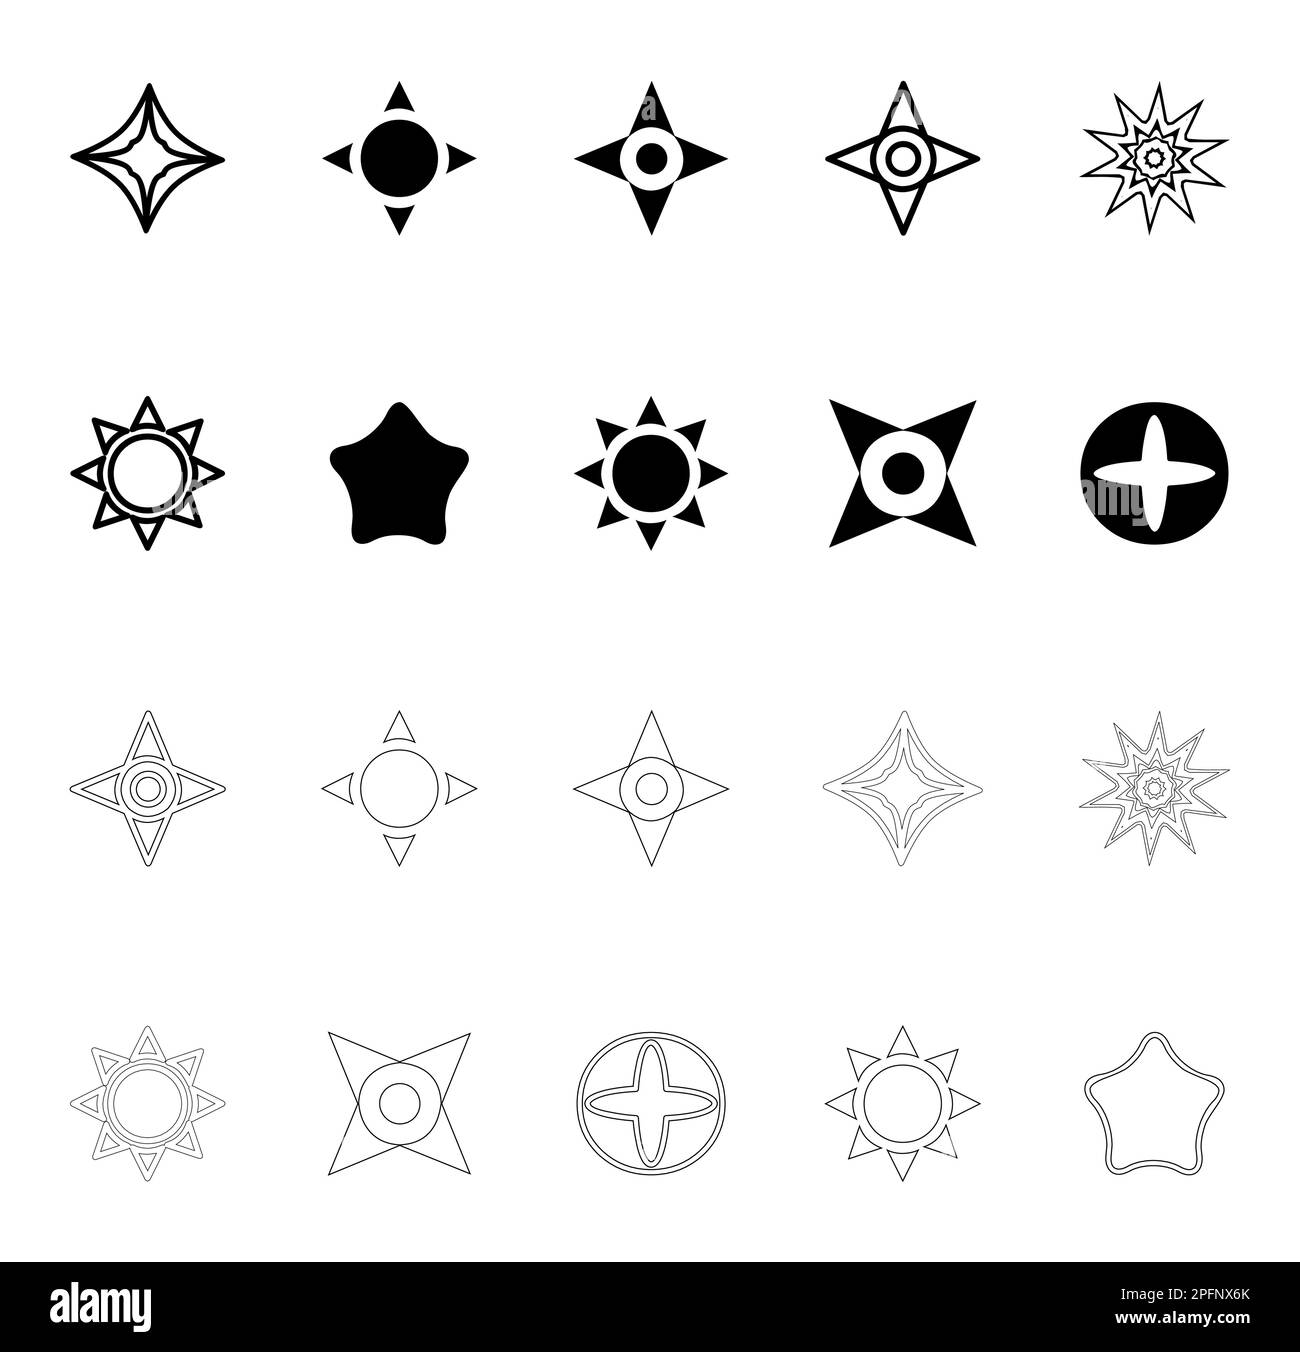 Jeu d'icônes étoile noir et blanc. Collection d'éléments de conception artistique Star Boho Illustration de Vecteur